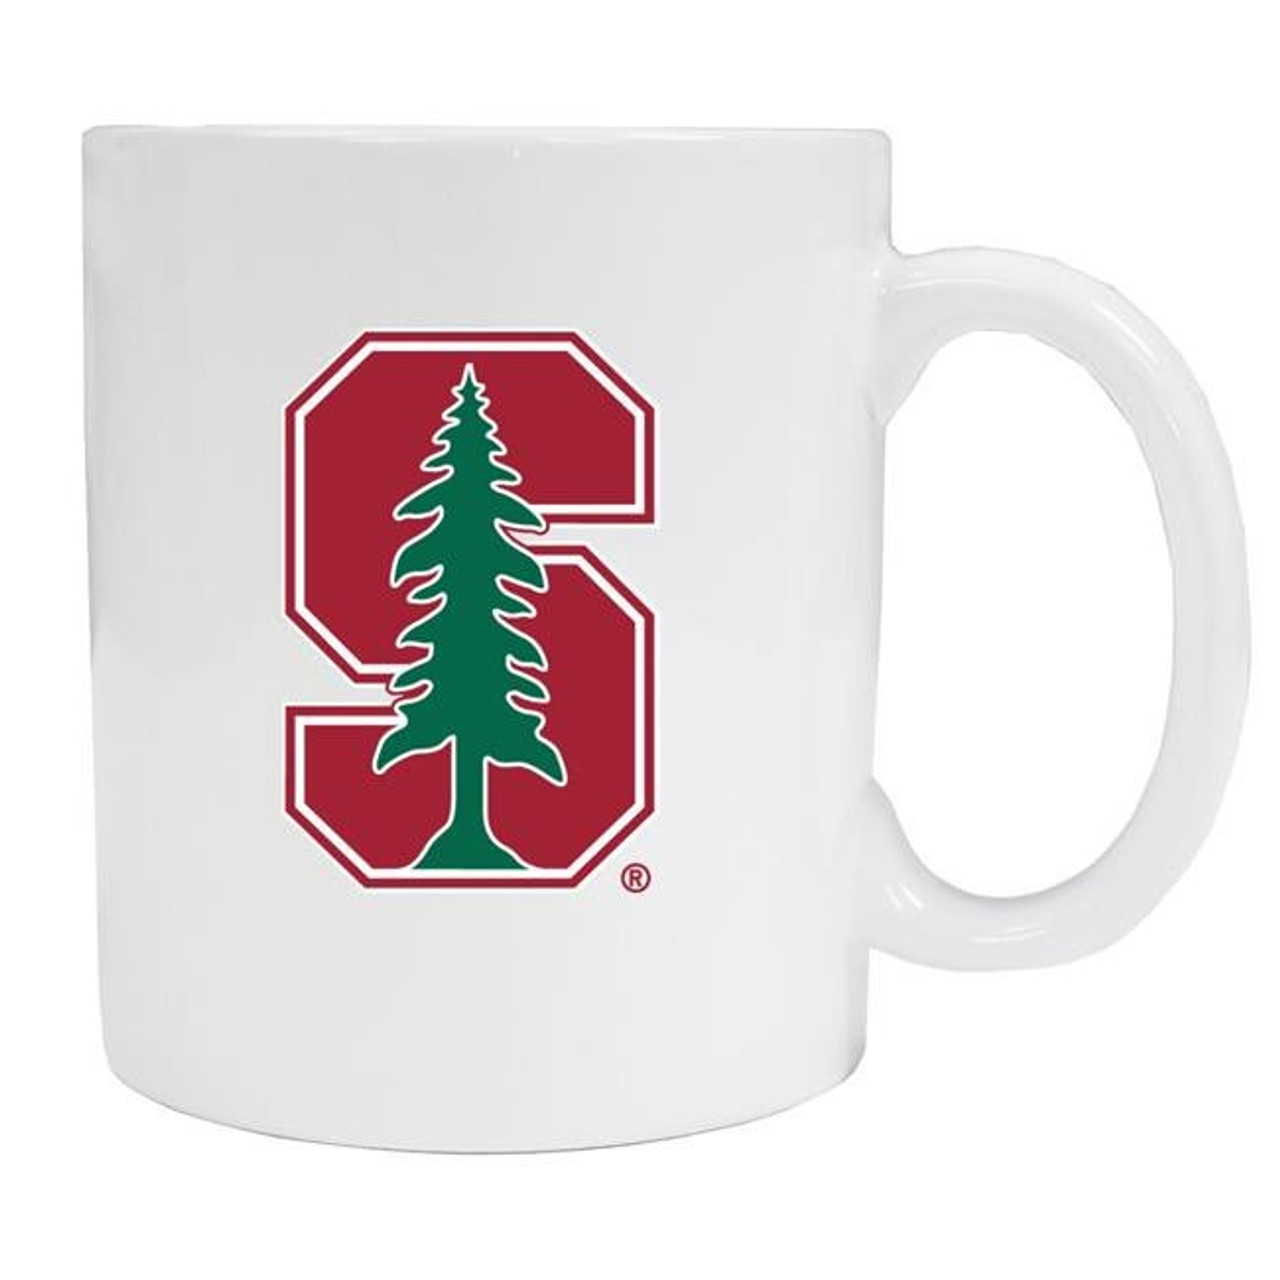 Stanford University White Ceramic Mug 2-Pack (White).